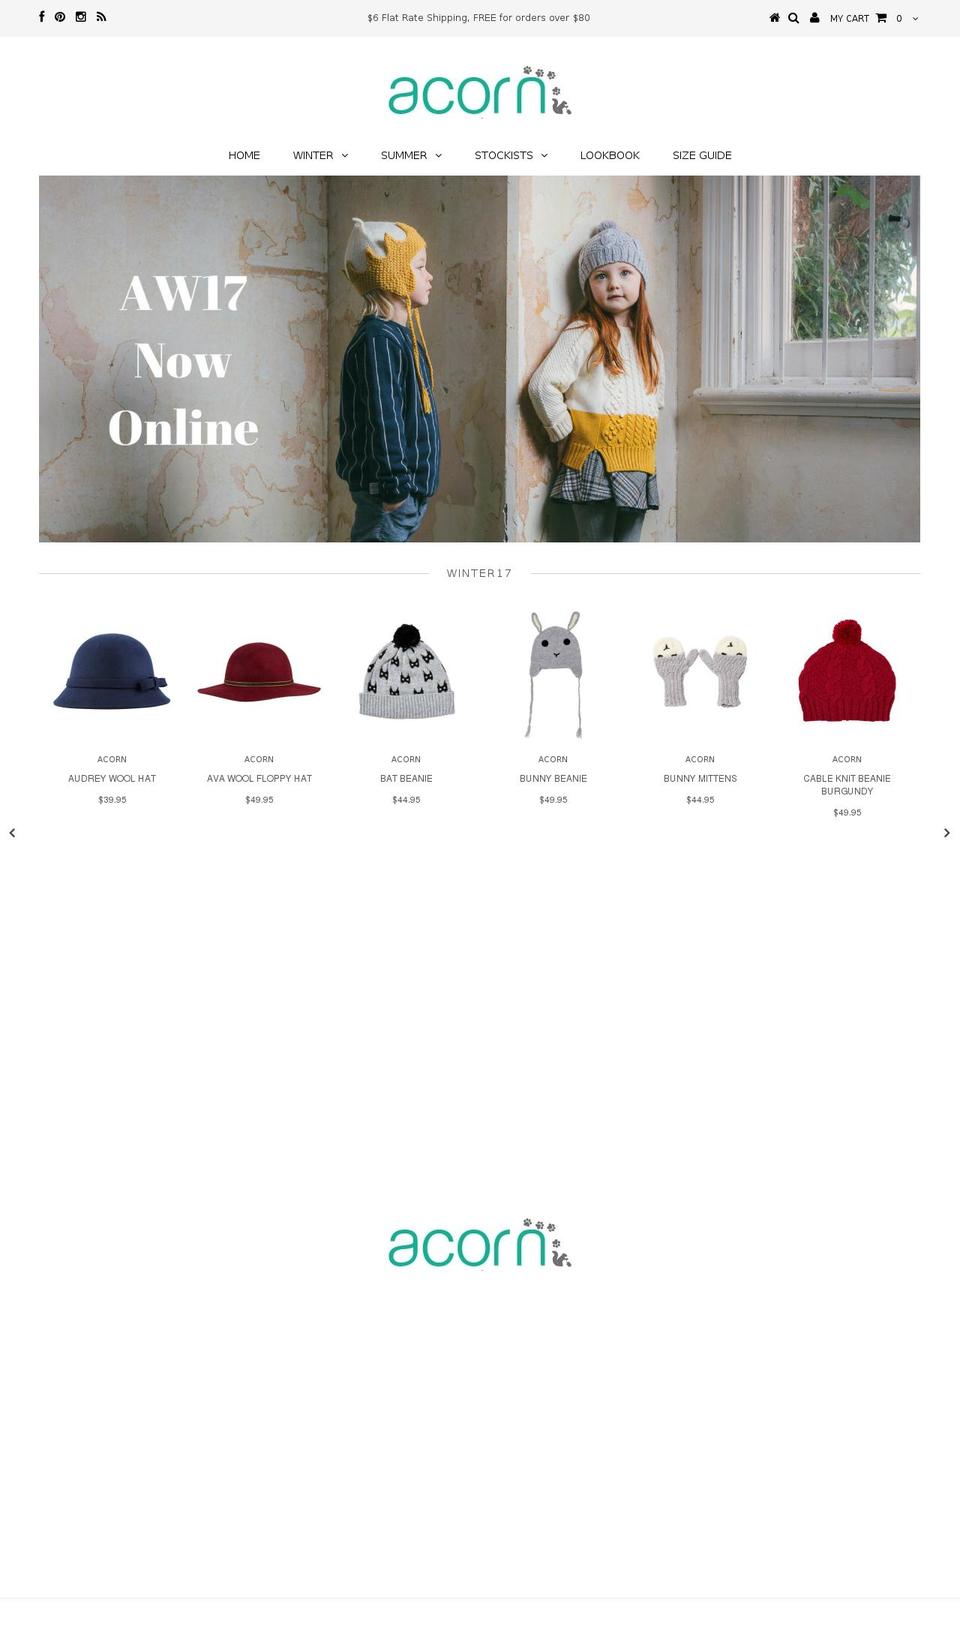 acornkids.com.au shopify website screenshot